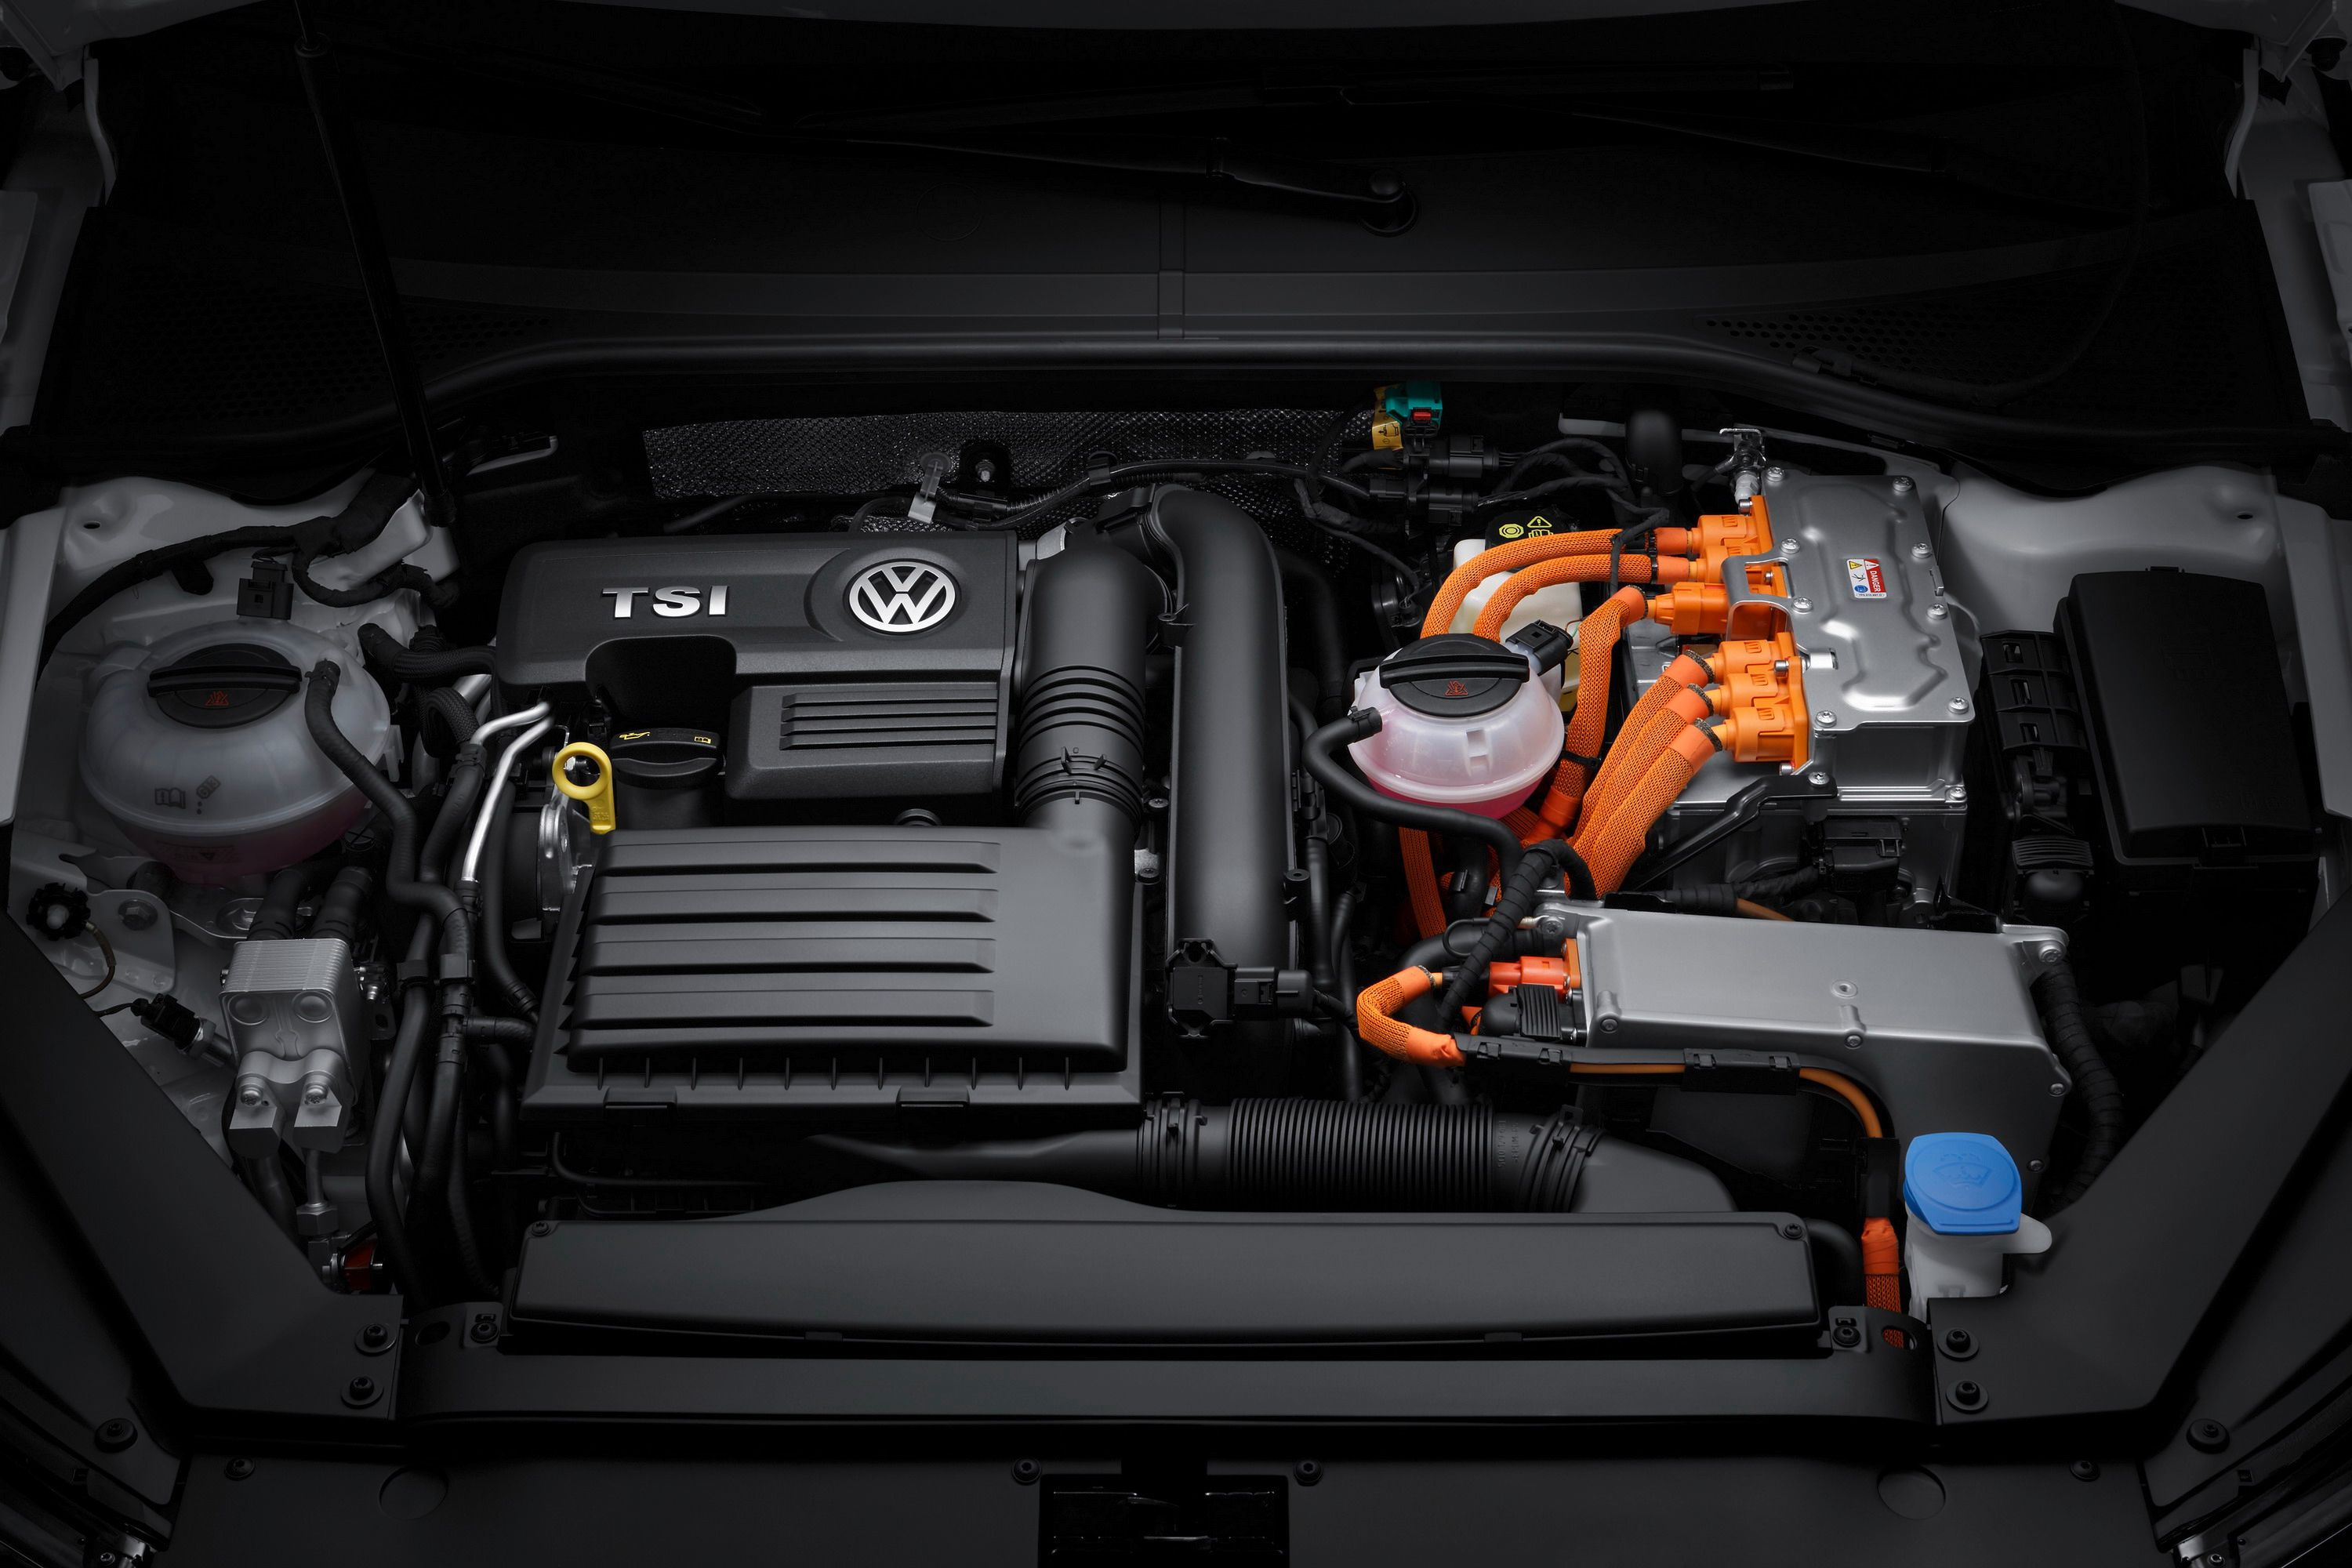 2015 - 2017 Volkswagen Passat GTE